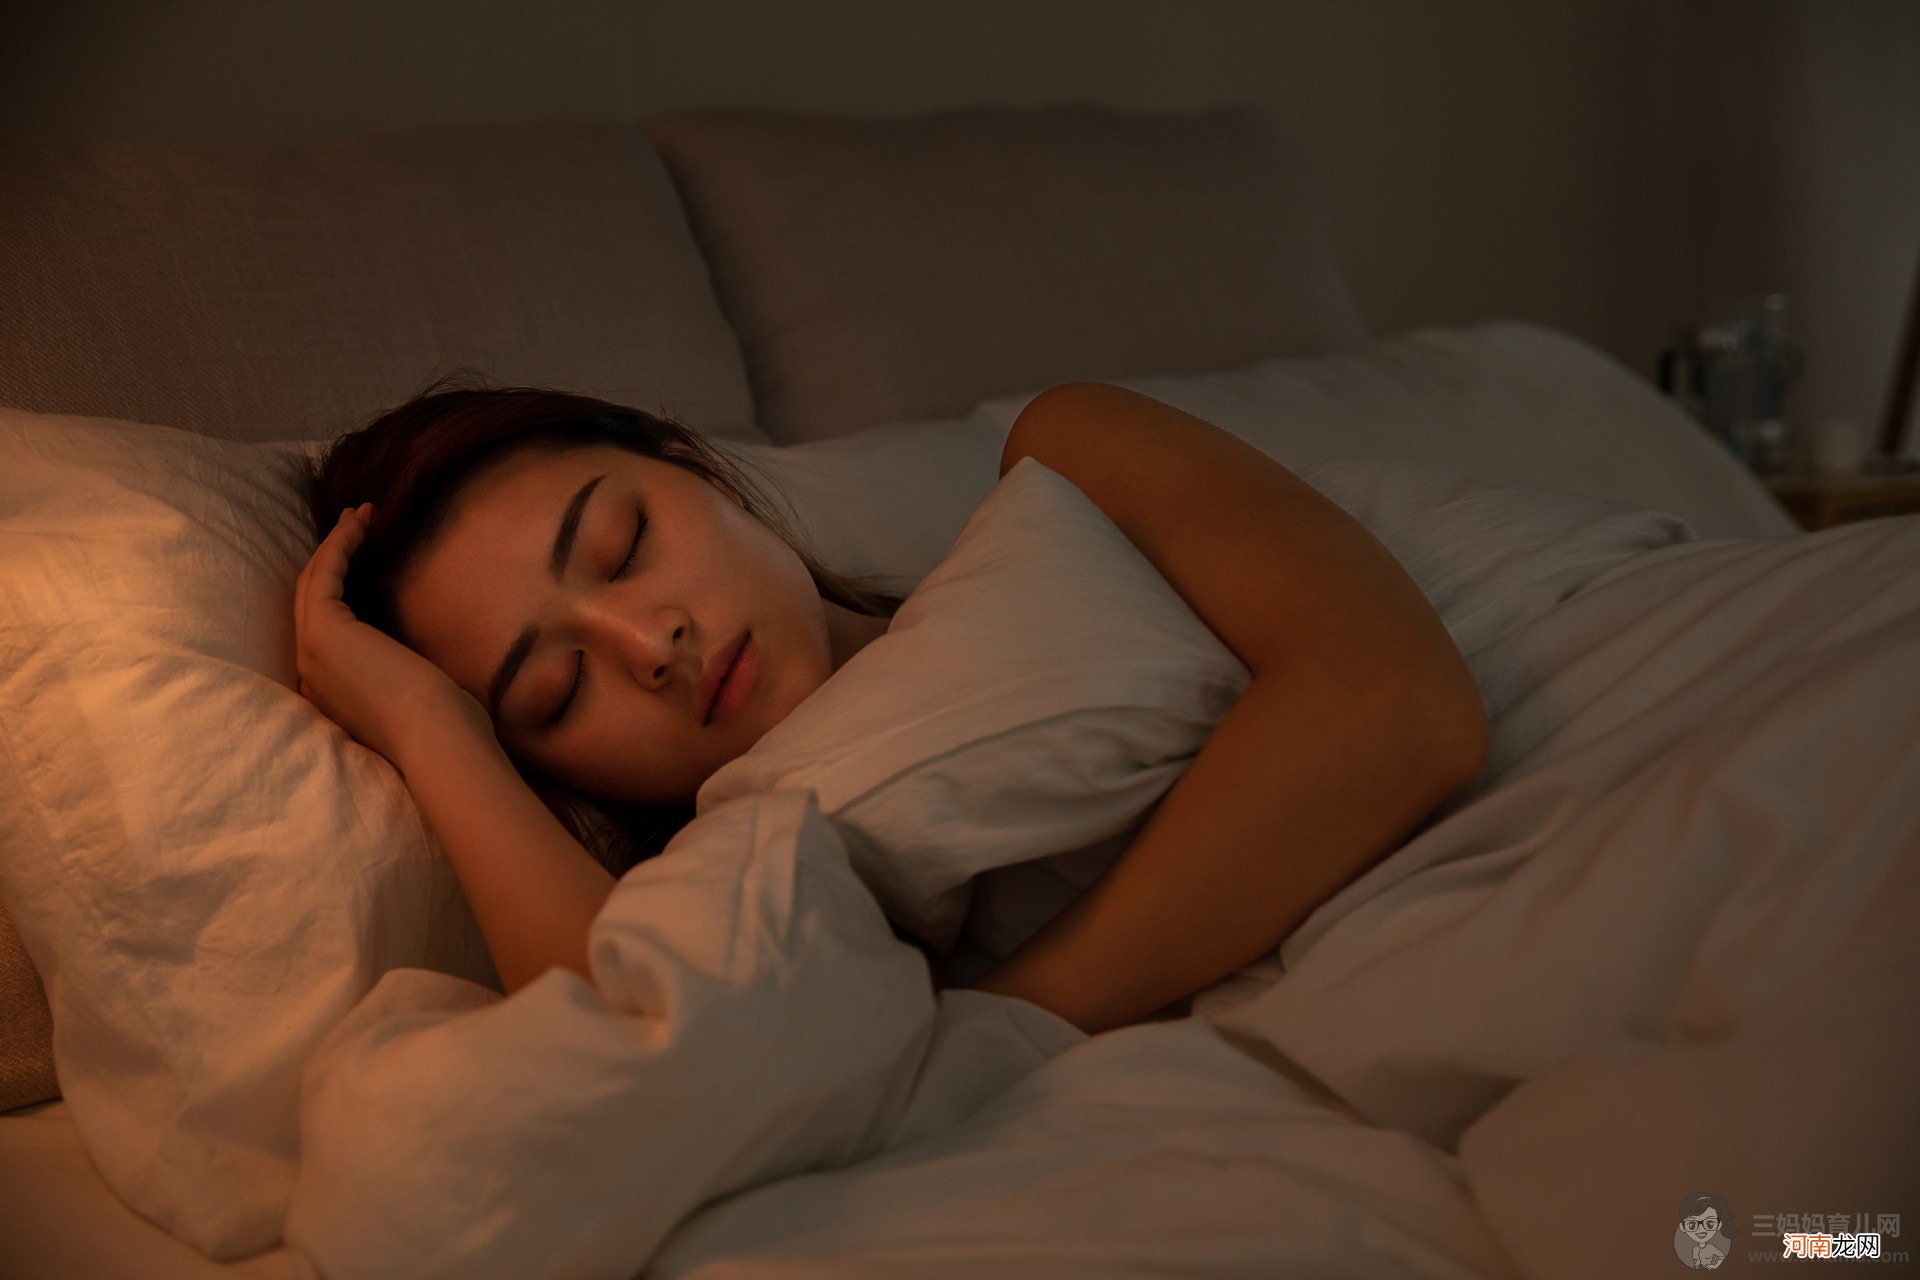 晚上睡不着觉是什么原因引起的 导致失眠的6大恶习你犯了几项